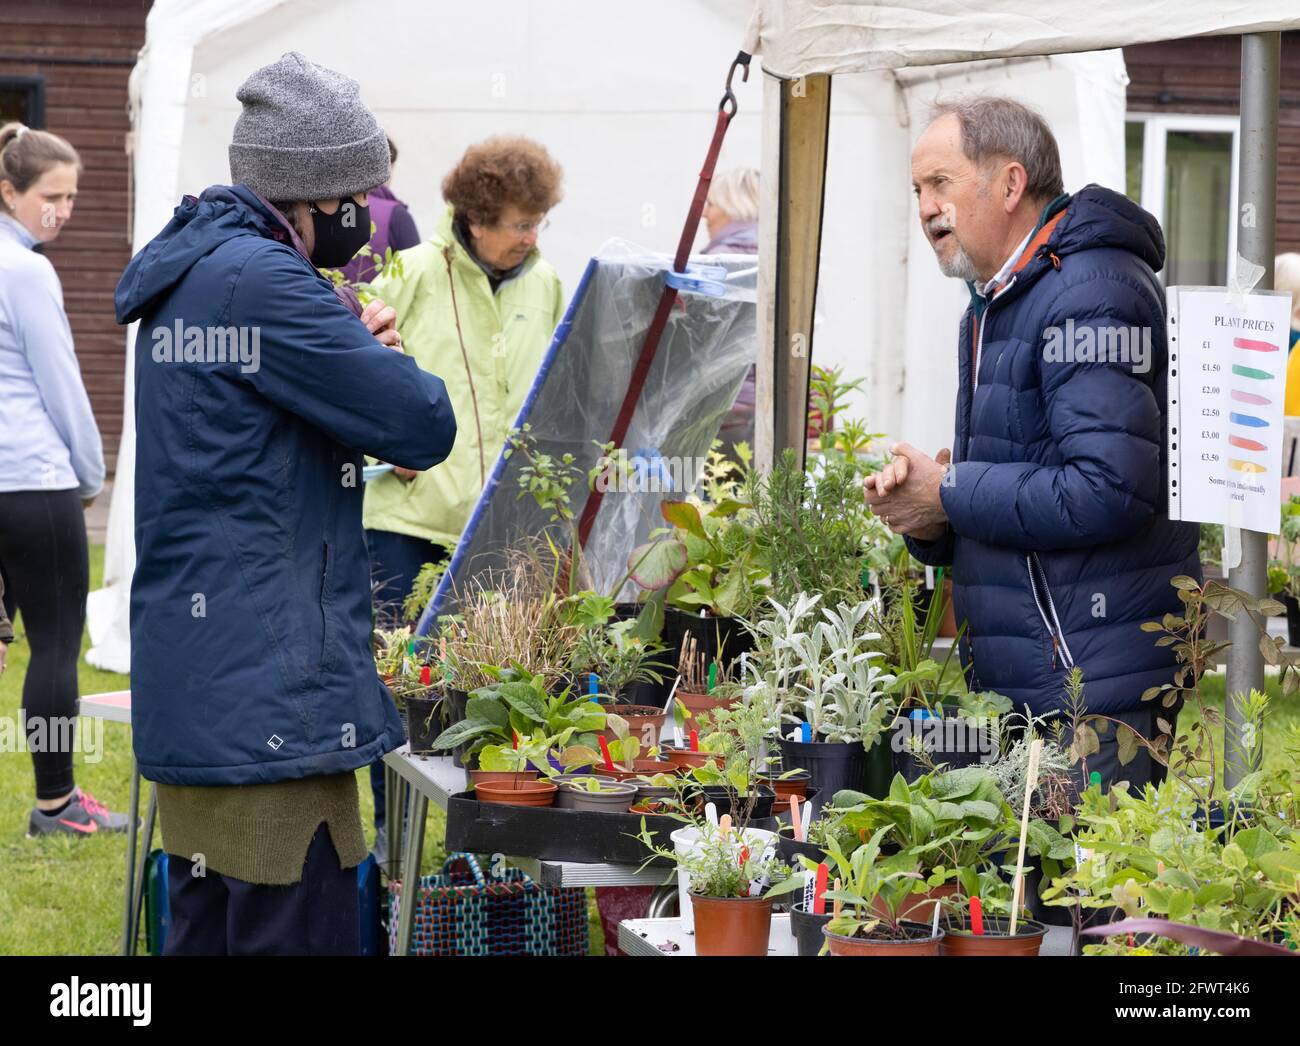 Lokaler Pflanzenverkauf in Großbritannien; Menschen, die während der COVID 19-Pandemie, Stetchworth, Cambridgeshire UK, Pflanzen an einem Stall im Dorf kaufen und verkaufen Stockfoto